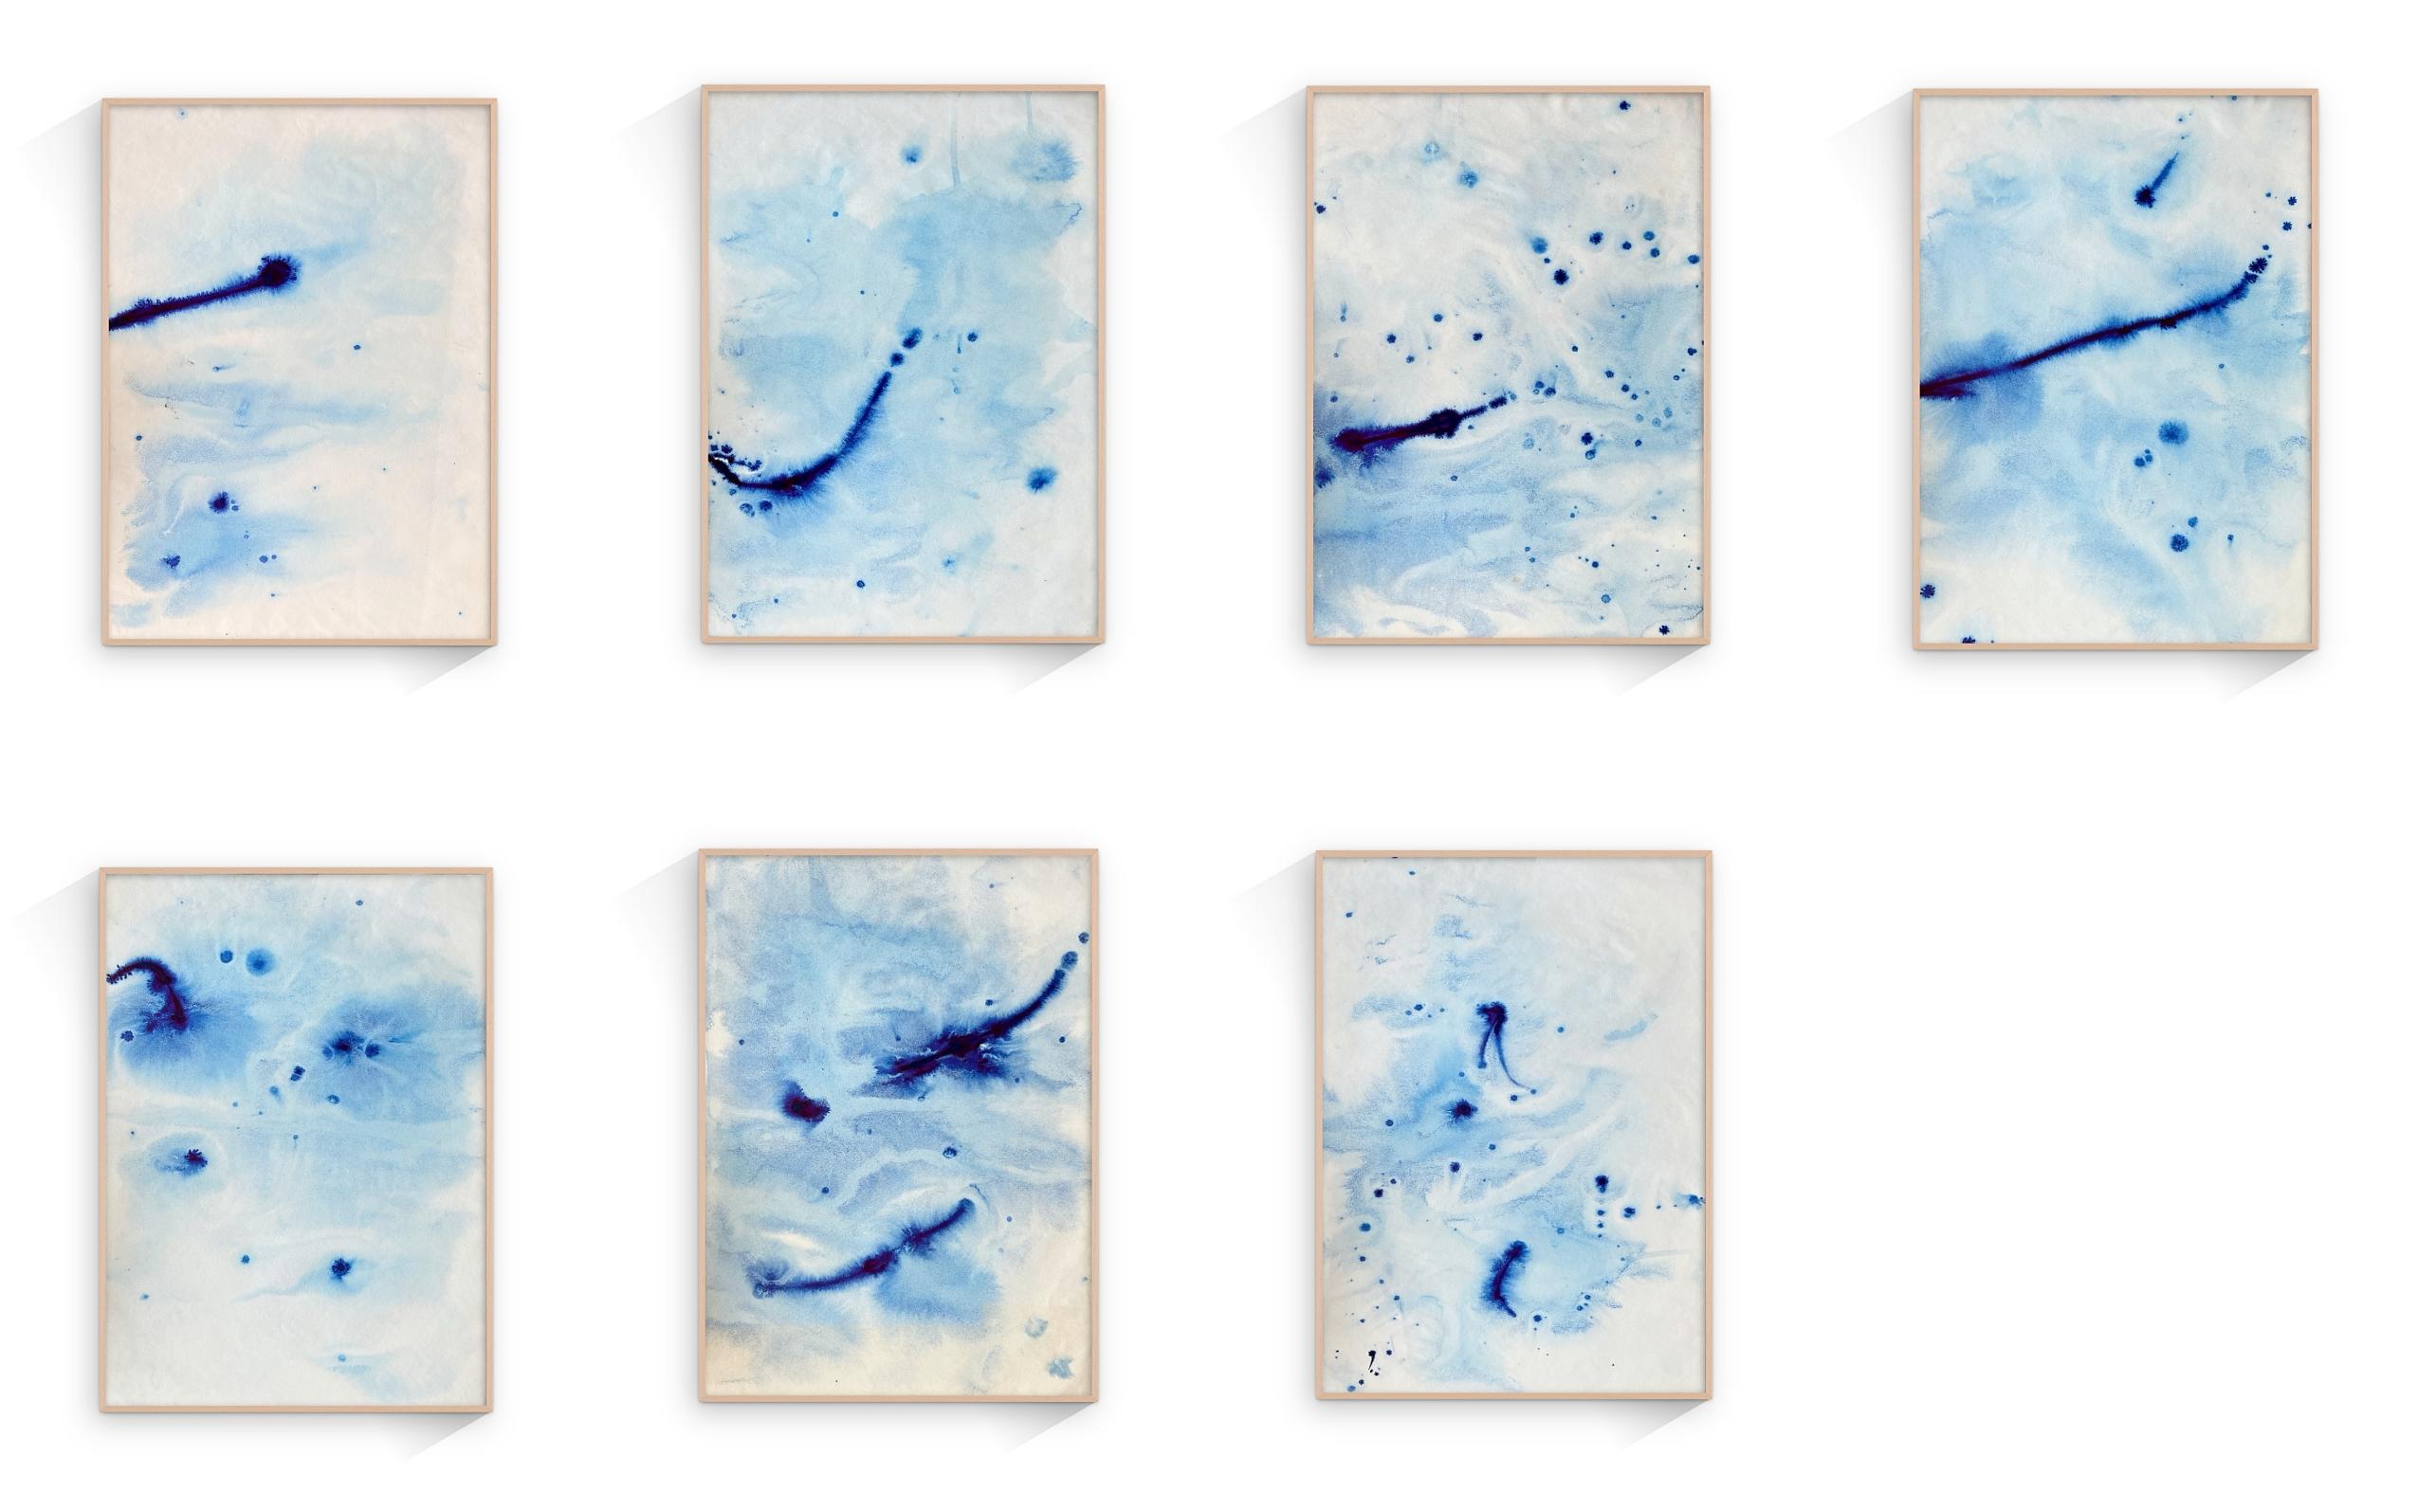 Monotypie des abstrakten, abgerundeten Typs, moderne Formen und Schichten, blaue Töne (Abstrakter Expressionismus), Art, von TUSET